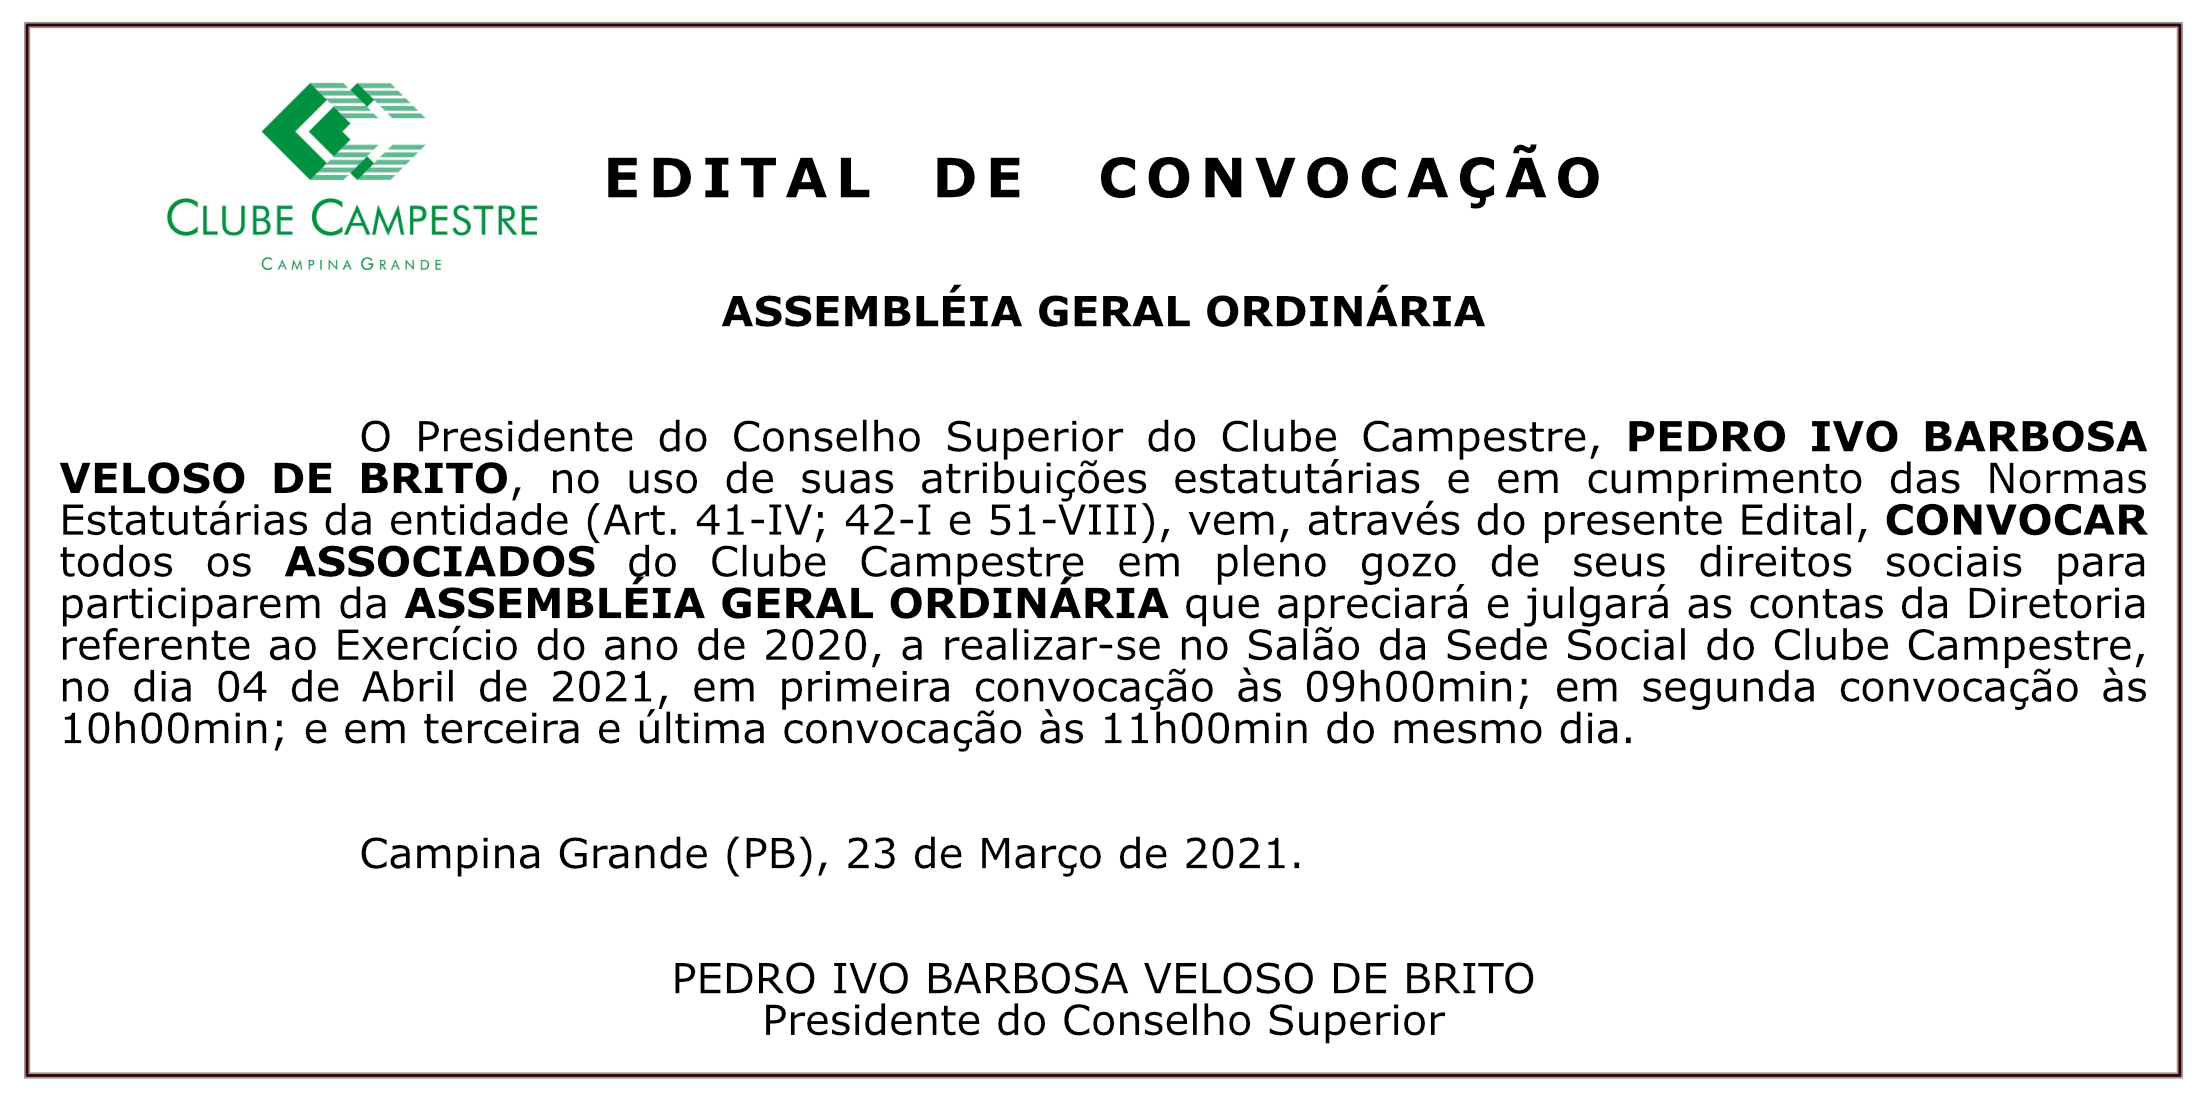 CLUBE CAMPESTRE – EDITAL DE CONVOCAÇÃO – ASSEMBLEIA GERAL ORDINÁRIA